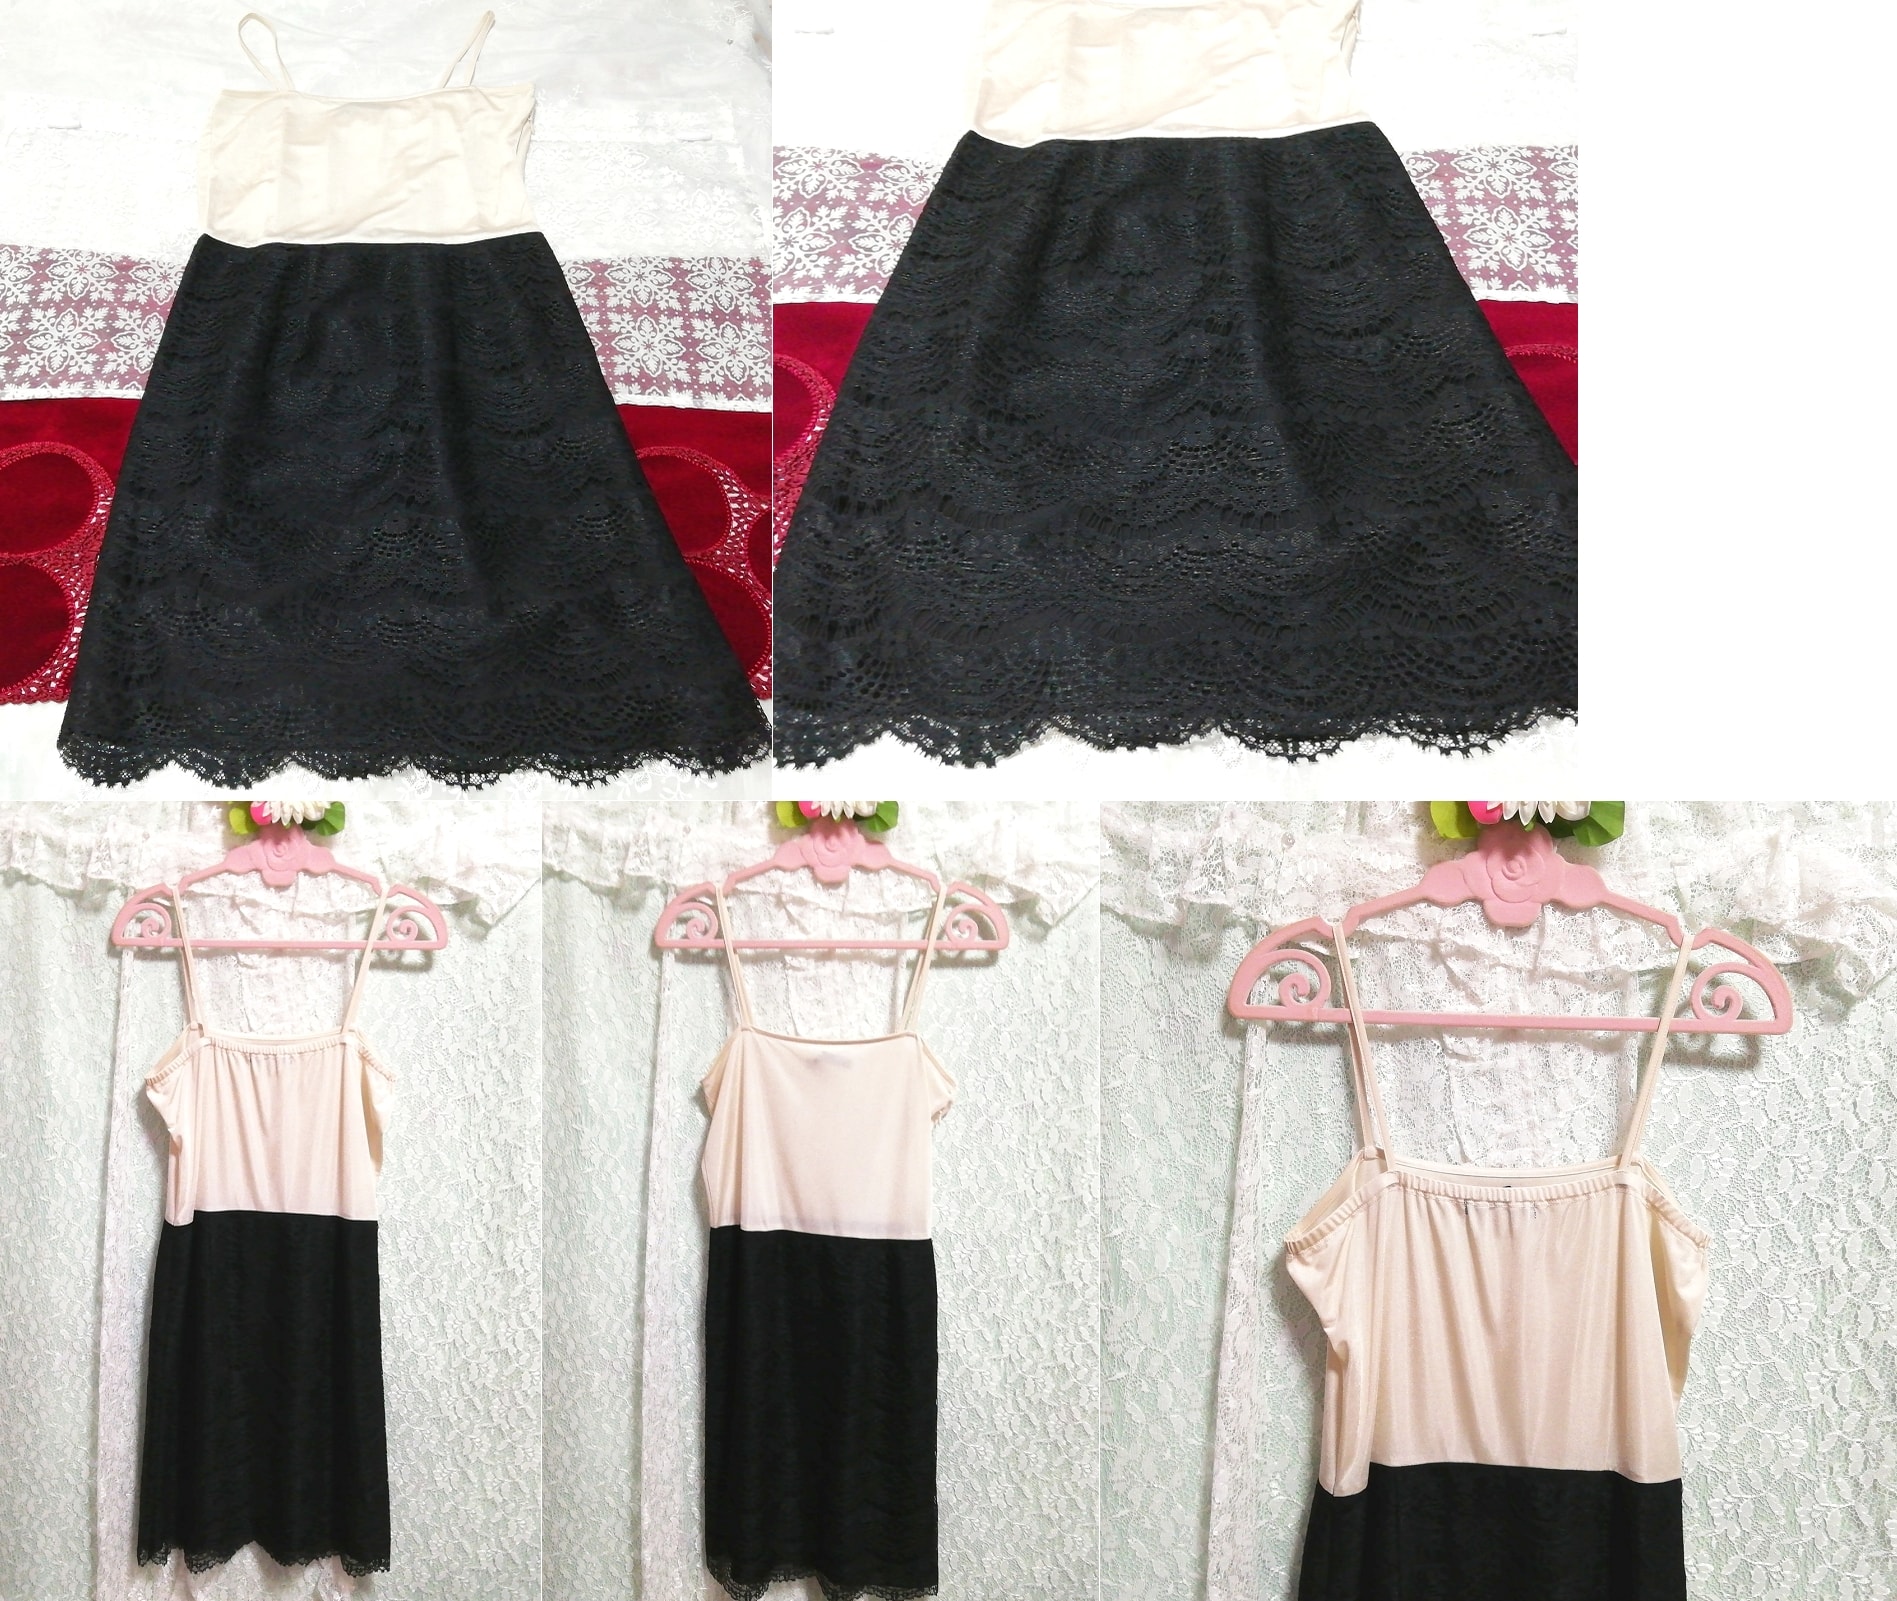 Geblümtes weißes Leibchen, schwarzer Spitzenrock, Negligé-Nachthemd und Babydoll-Kleid, Mode, Frauenmode, Leibchen